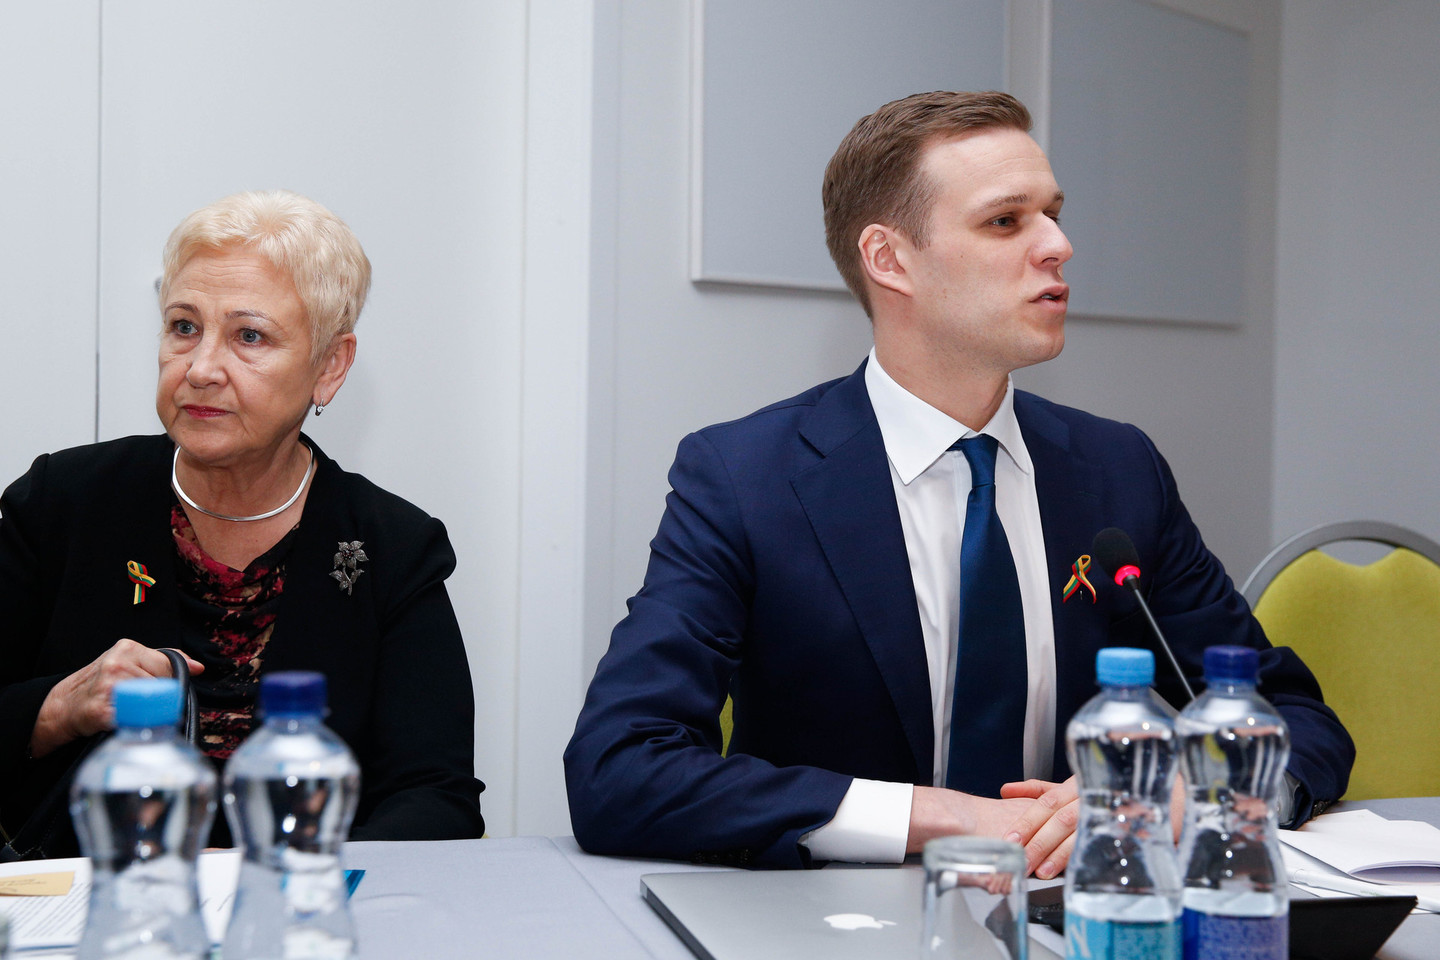 Konservatoriai tikina, kad Lietuva nebegali sau leisti iššvaistyti dar ketverių metų, kaip tai įvyko dabar.<br>T.Bauro nuotr.